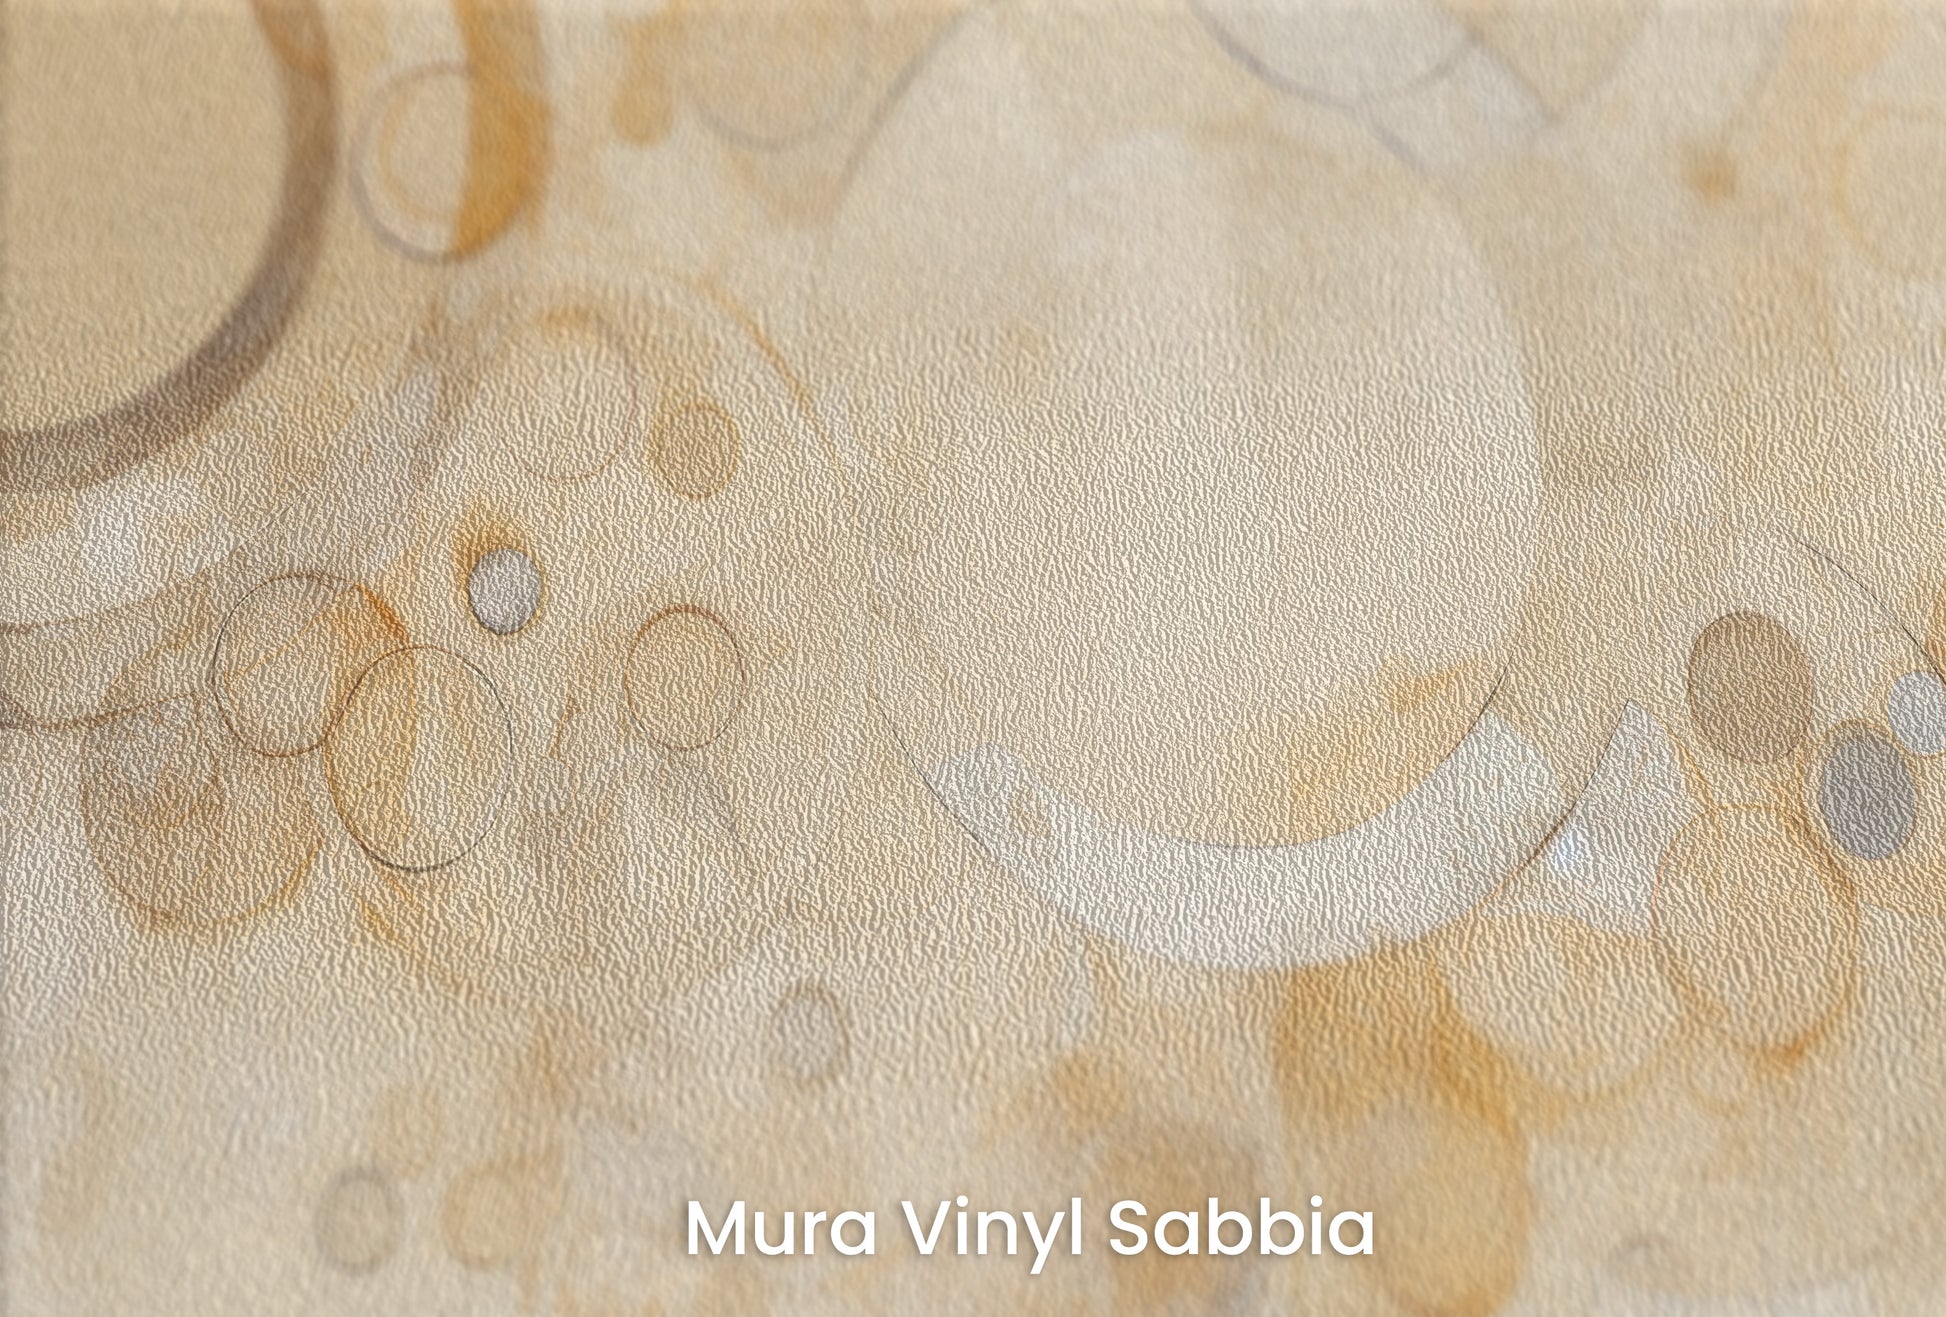 Zbliżenie na artystyczną fototapetę o nazwie AMBER ORBITAL FUSION na podłożu Mura Vinyl Sabbia struktura grubego ziarna piasku.